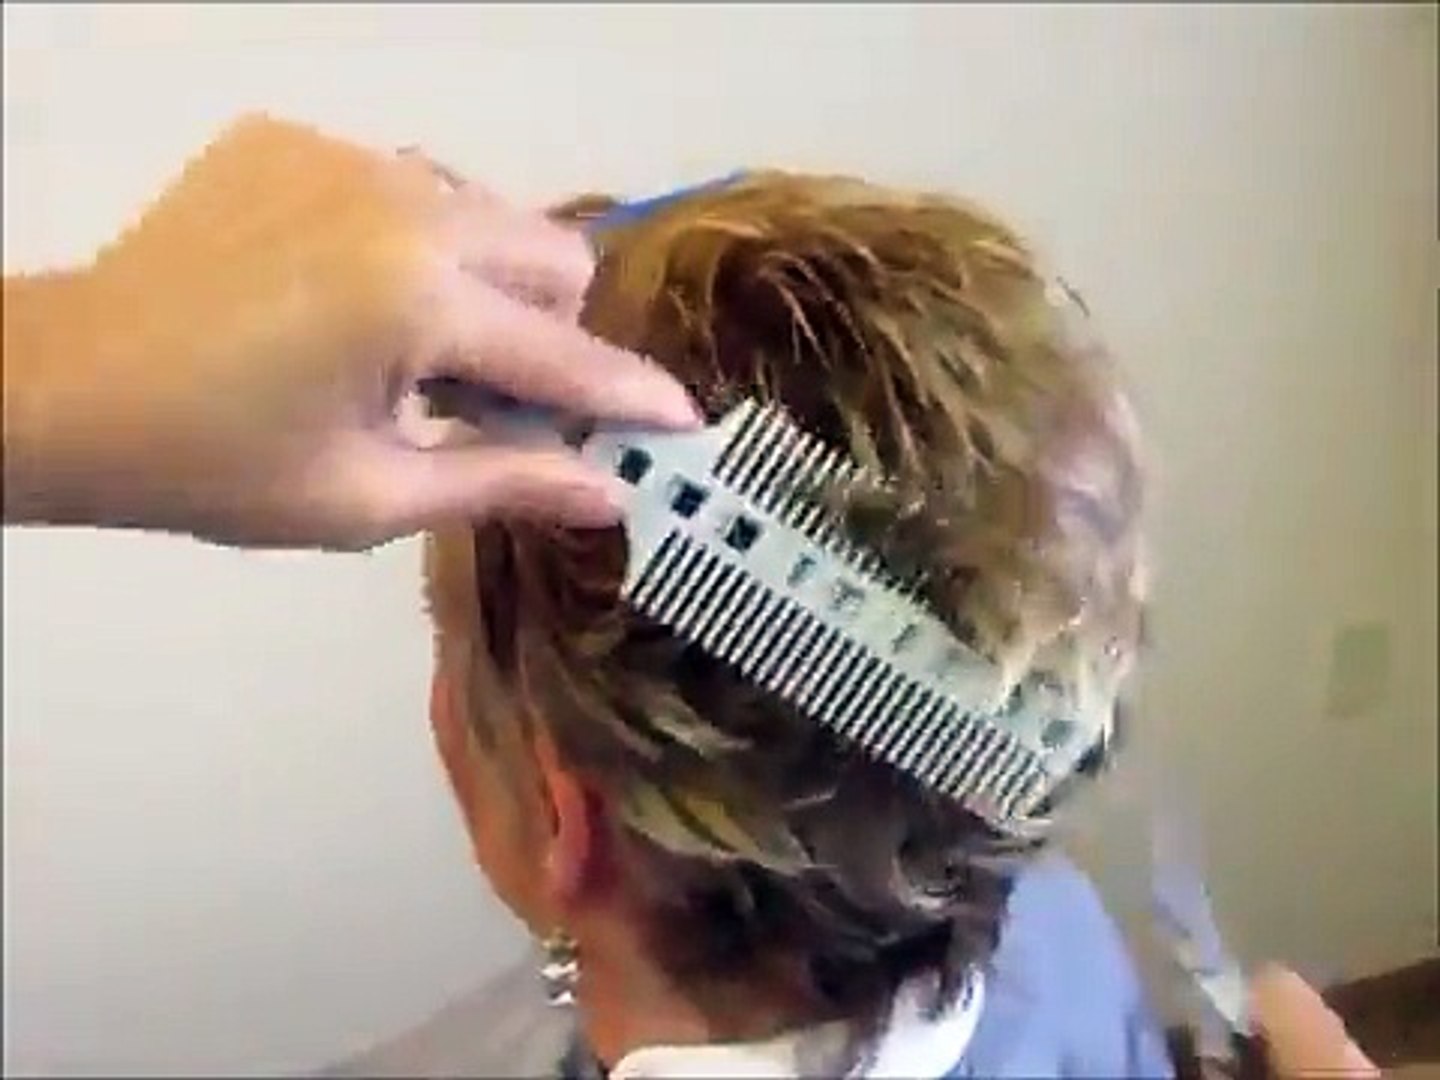 combpal hair cutting tool